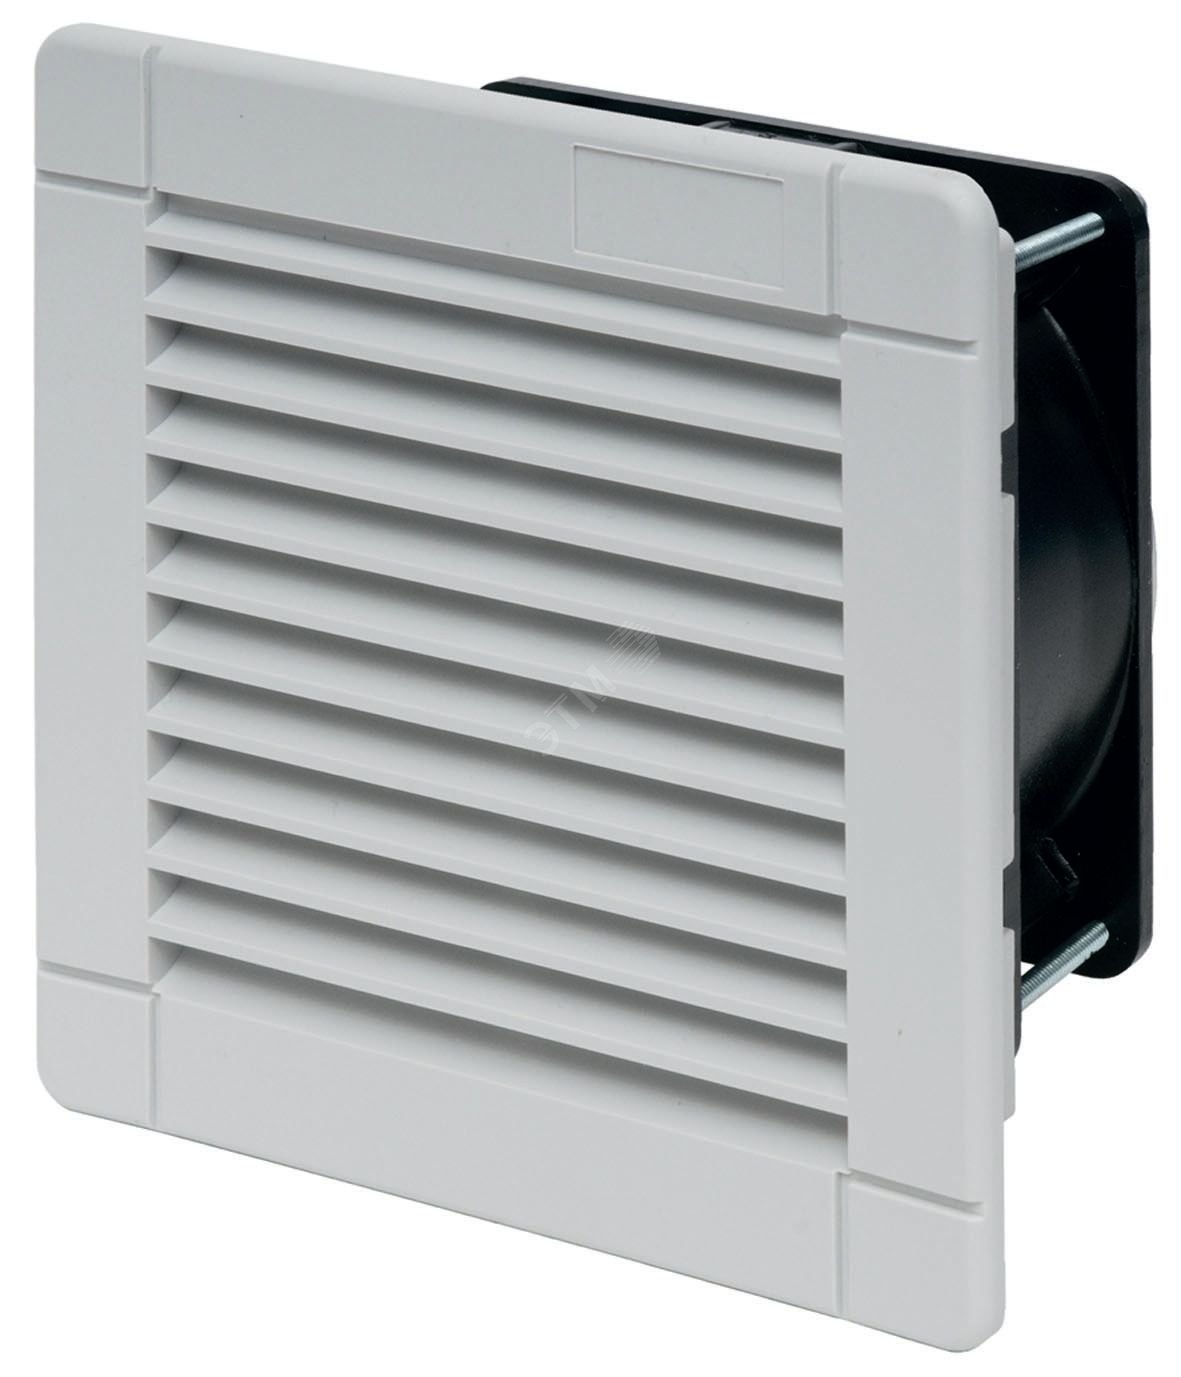 Вентилятор с фильтром стандартная версия питание 230В АС расход воздуха 630м3/ч IP54 7F.50.8.230.5630 FINDER